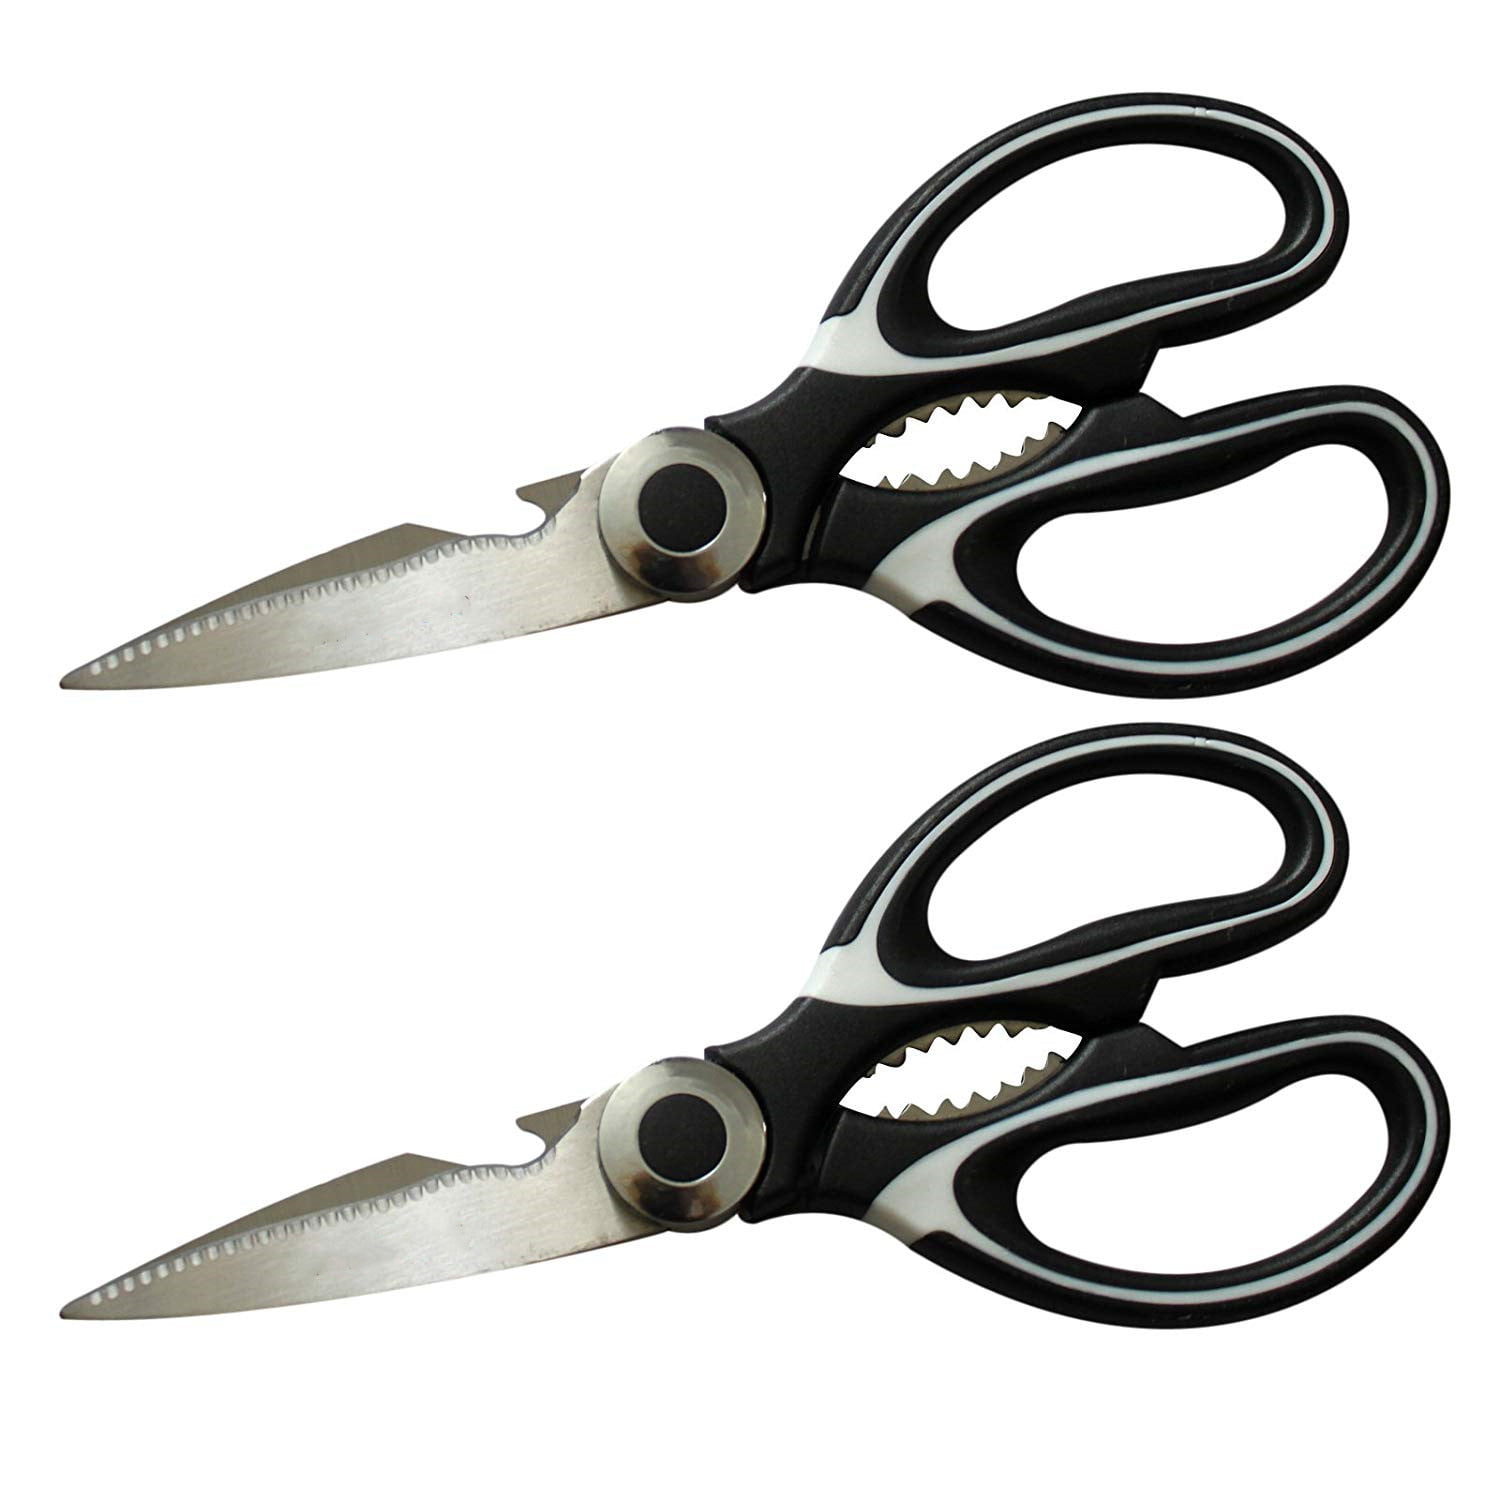 nuoshen Heavy Duty Kitchen Scissors Sharp Scissor for Kitchen Shears Scissors 